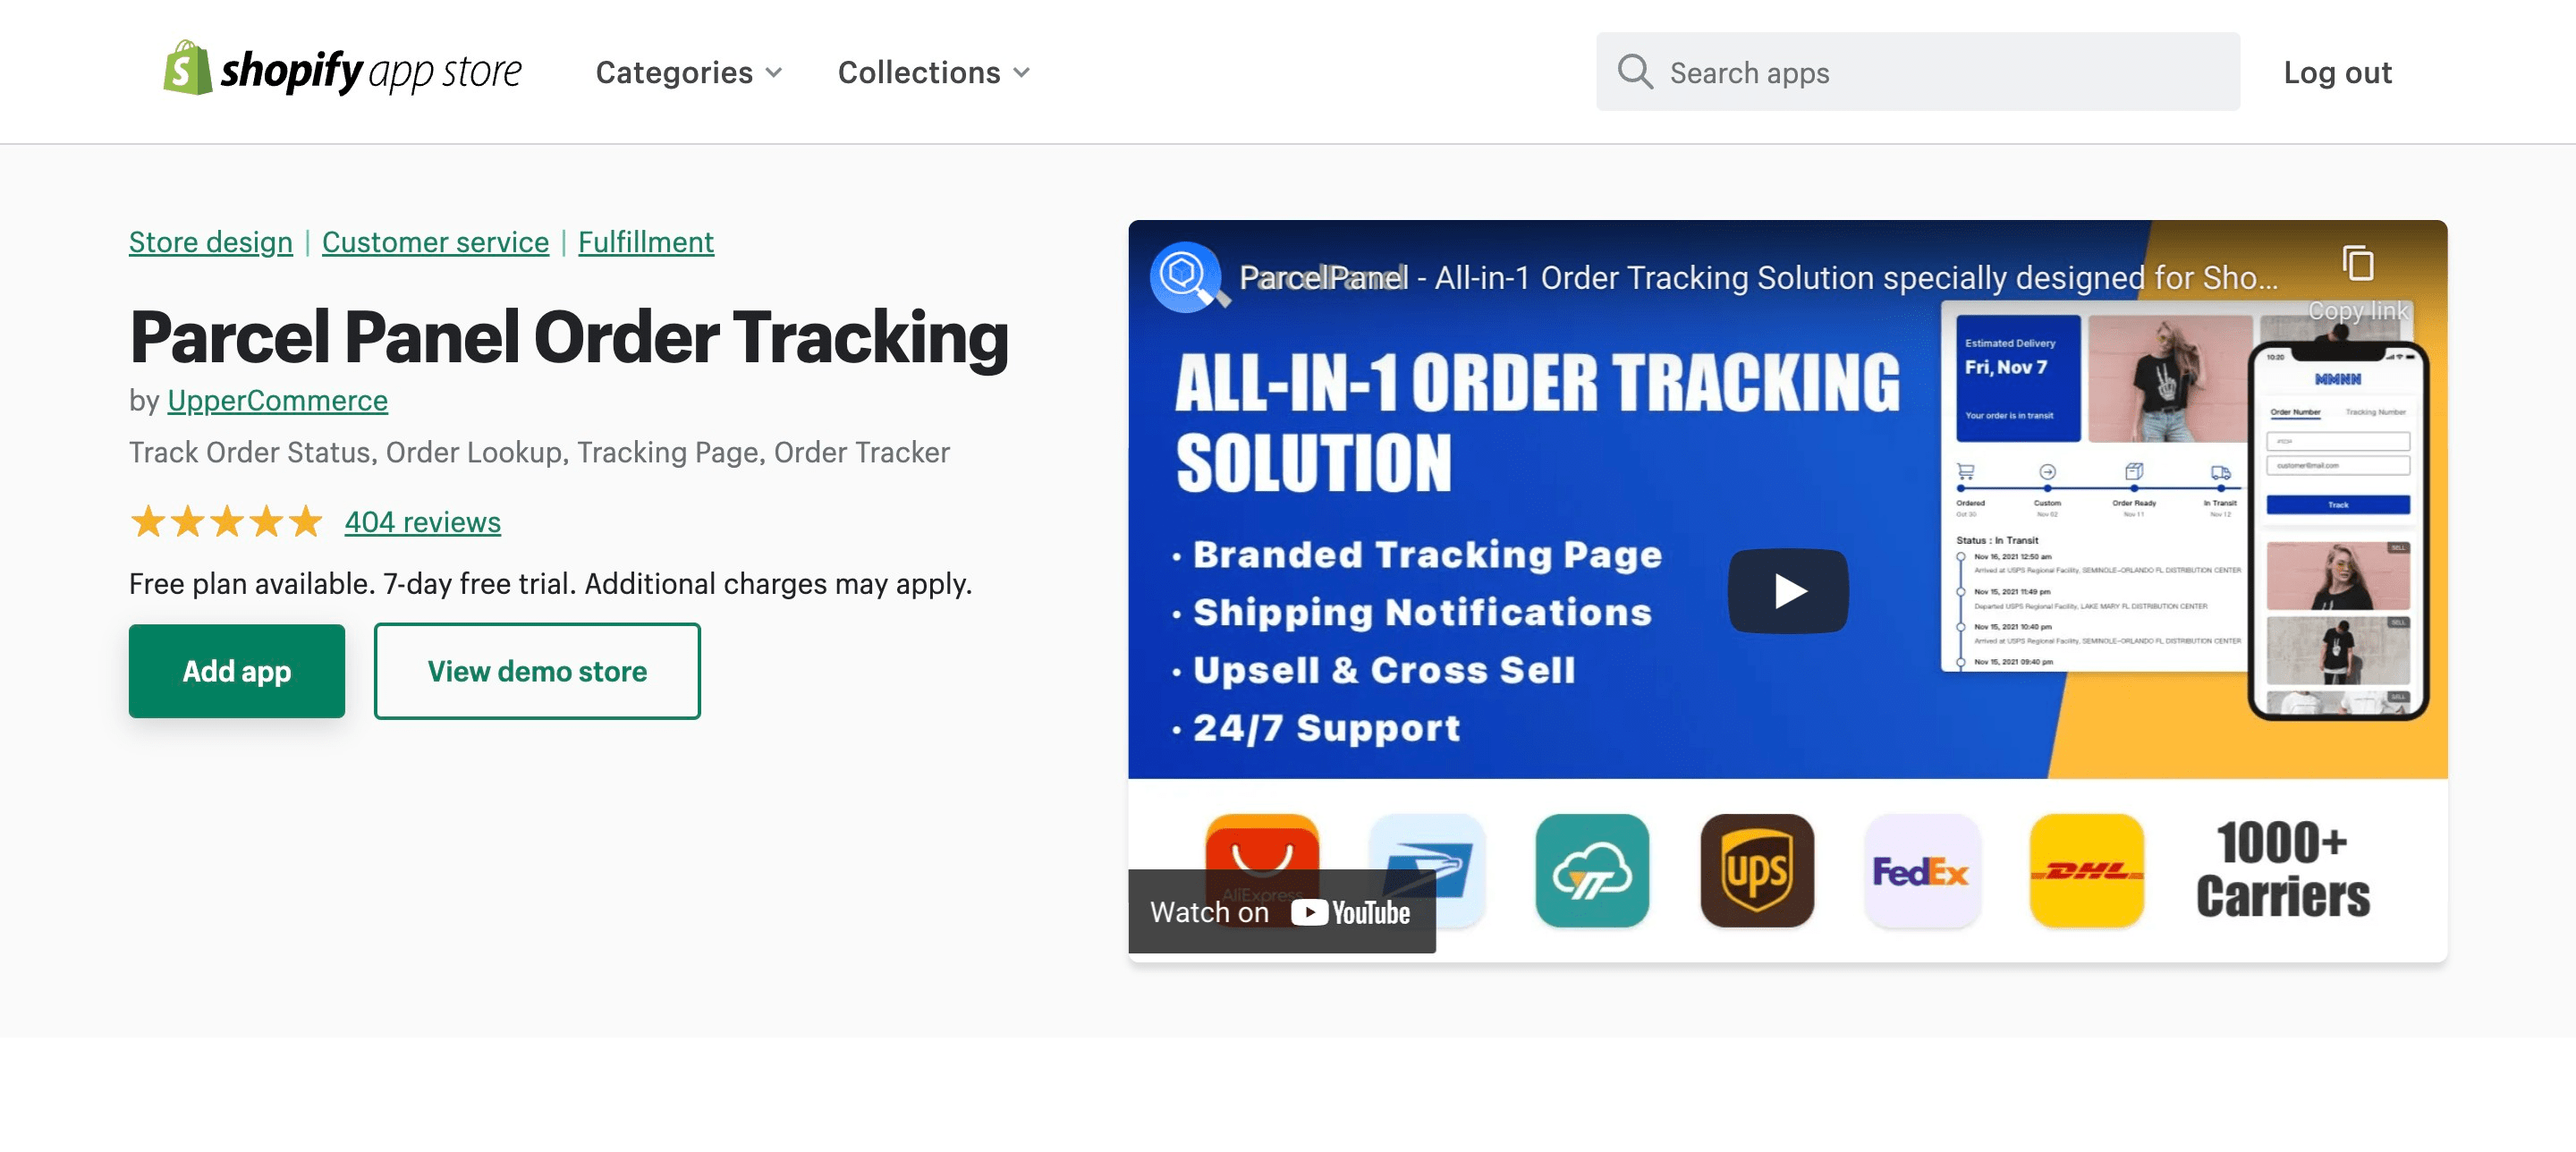 Best Shopify Order Tracking apps: Parcel panel order